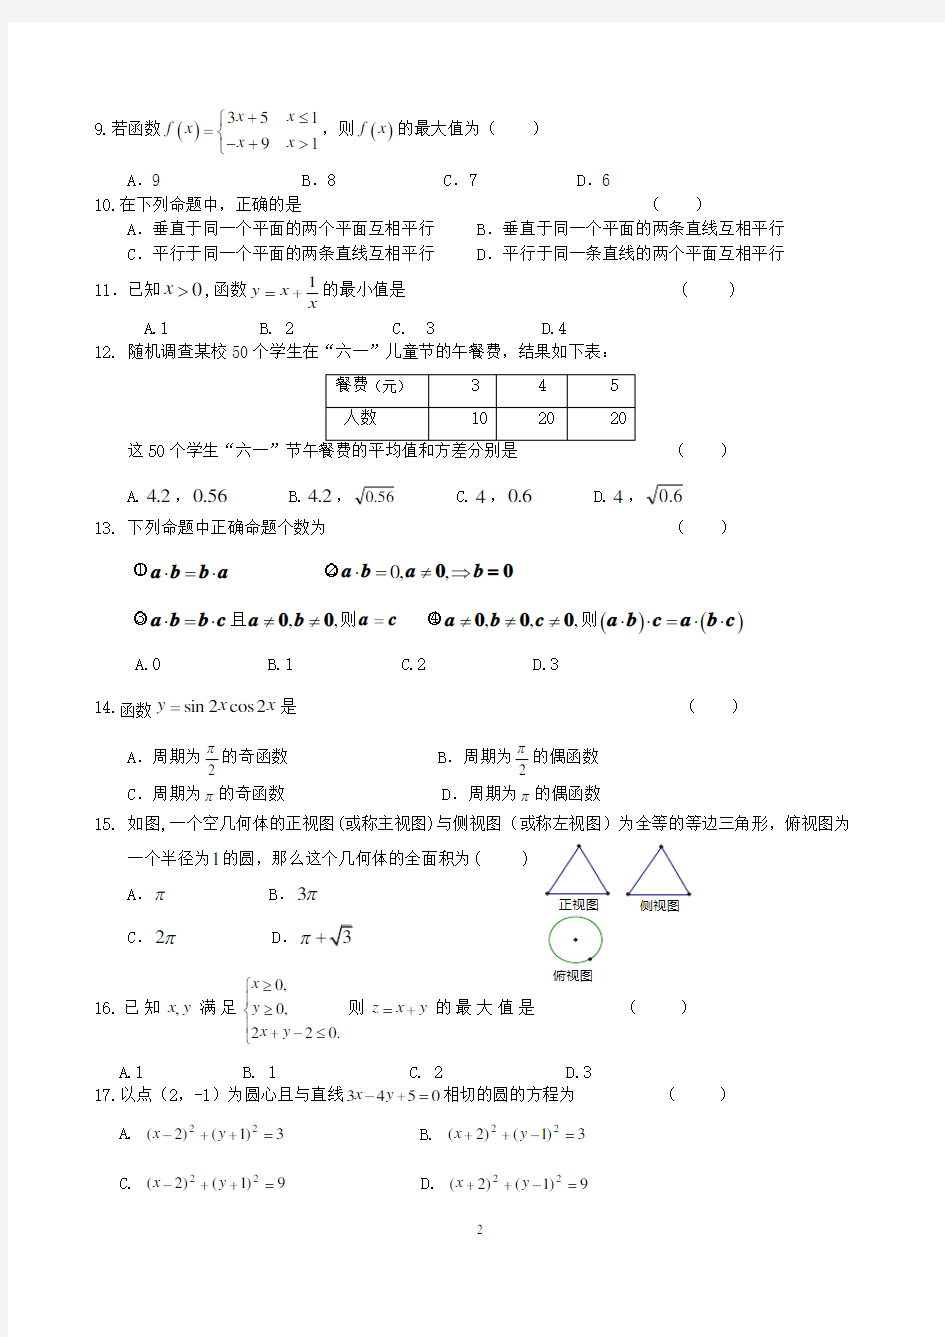 【高中会考】2018年6月 高中数学会考标准试卷(含答案)